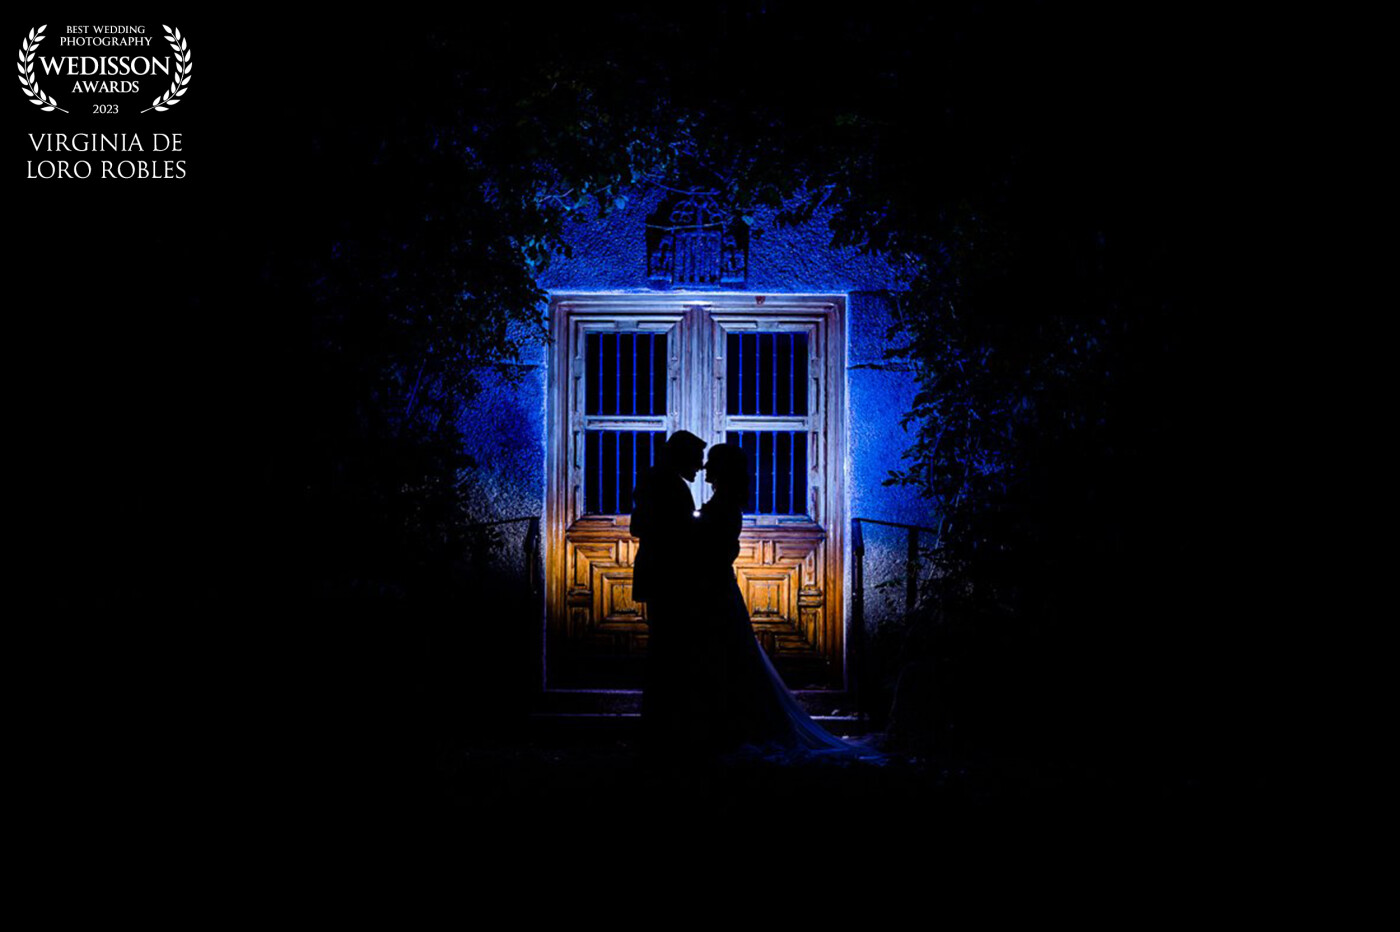 El final de un día de boda, los novios a solas, una luz romántica, sus siluetas acercándose.